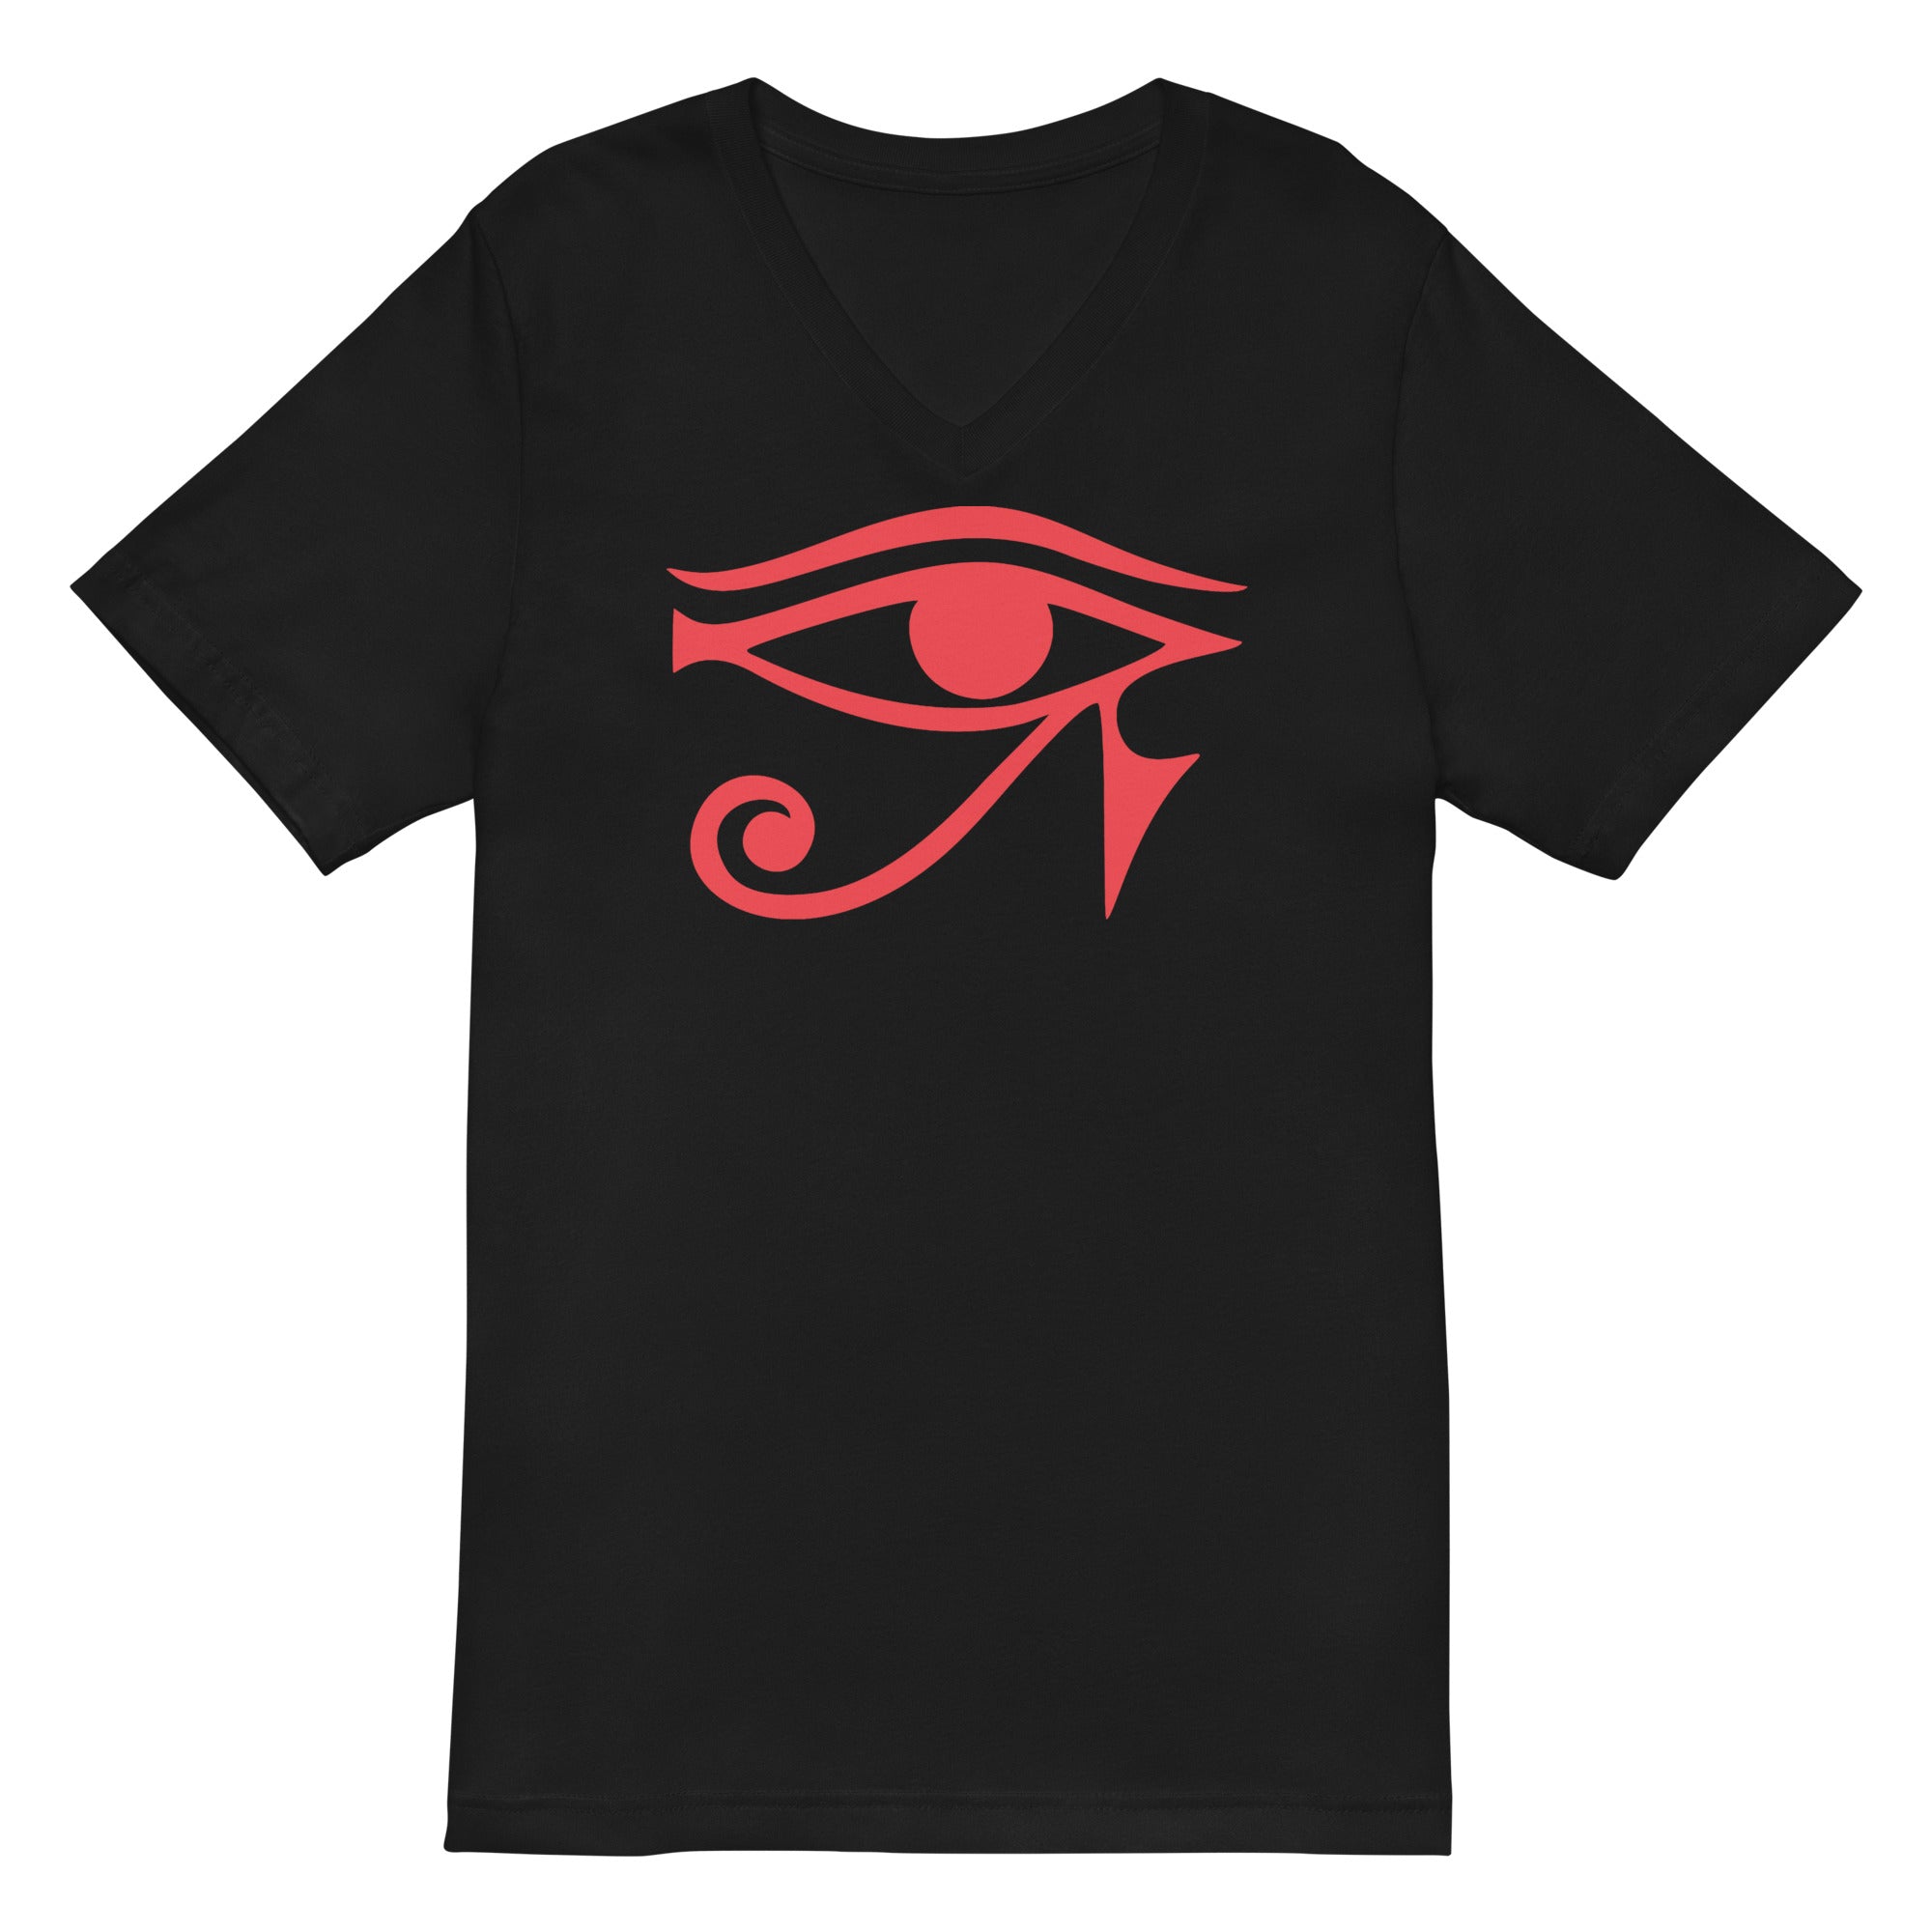 Eye of Ra Egyptian Goddess Women’s Short Sleeve V-Neck T-Shirt Red Print - Edge of Life Designs